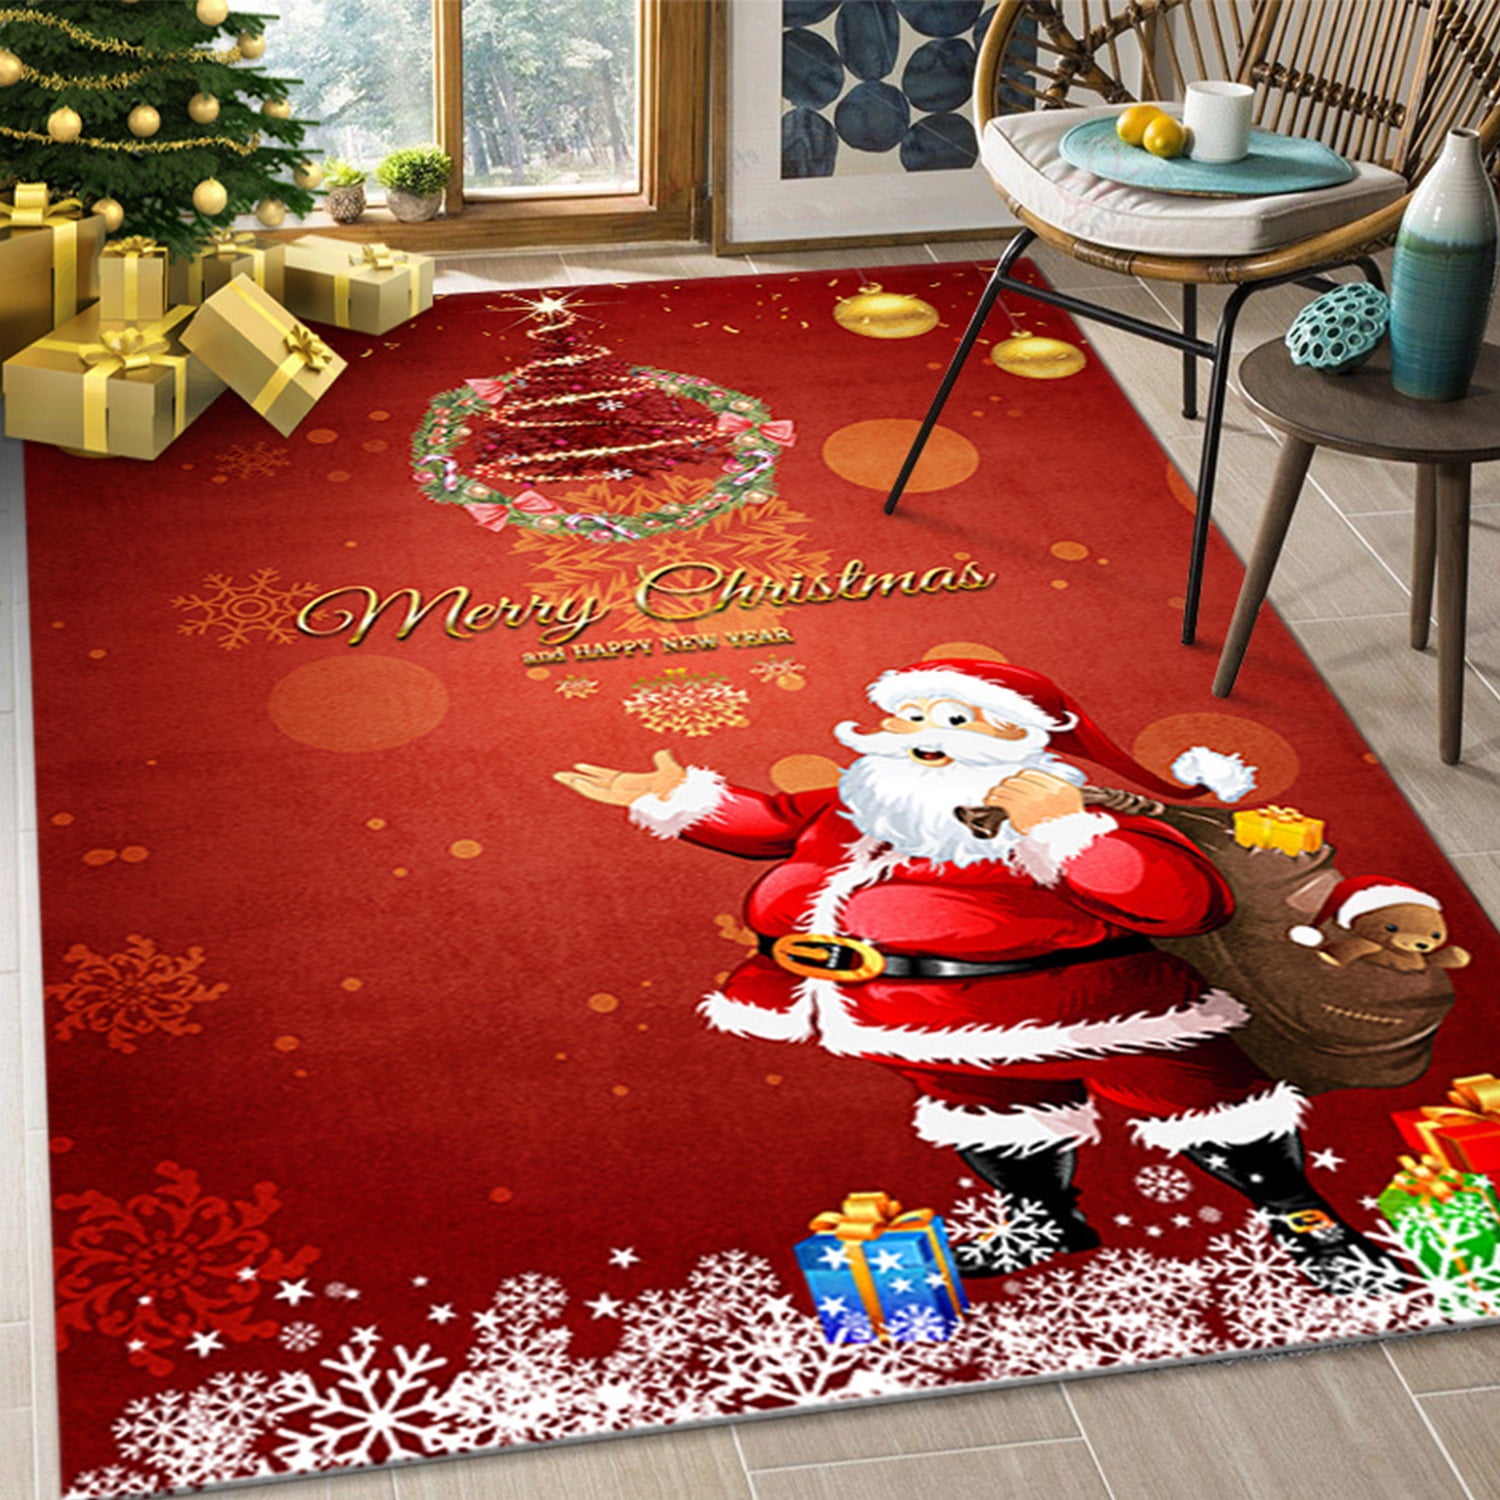 Christmas Tree Mat Xmas Welcome Decorative Doormat Non Slip Winter Floor  Mats New year Frontdoor Accessories Home Supplies